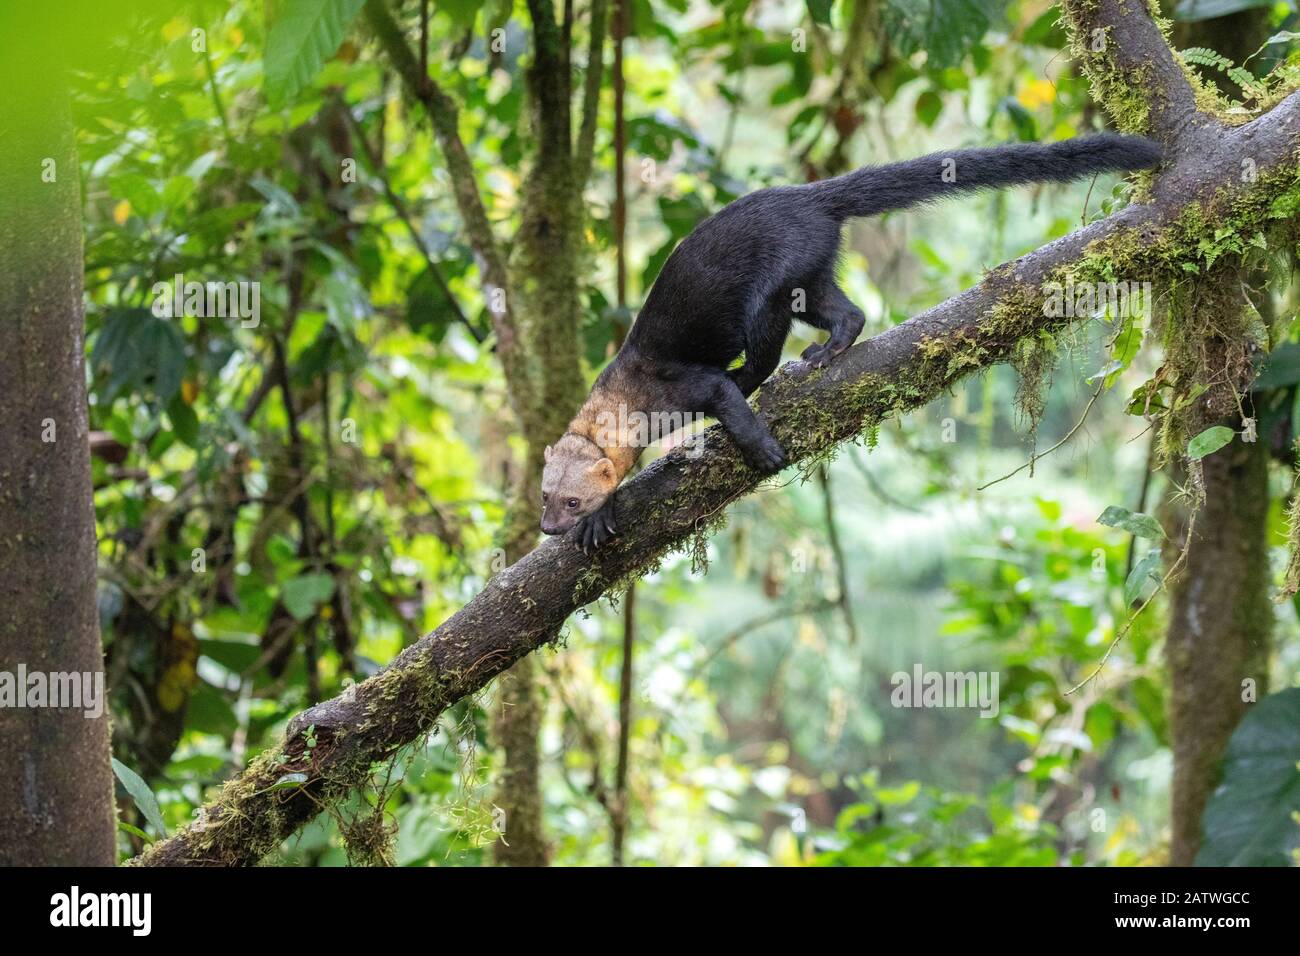 Tayra (Eira barbara) grimpant dans un arbre dans un habitat de forêt tropicale avec des arbres couverts de fougères, réserve privée de Bellavista, région de Mindo Cloud, Équateur, juillet Banque D'Images